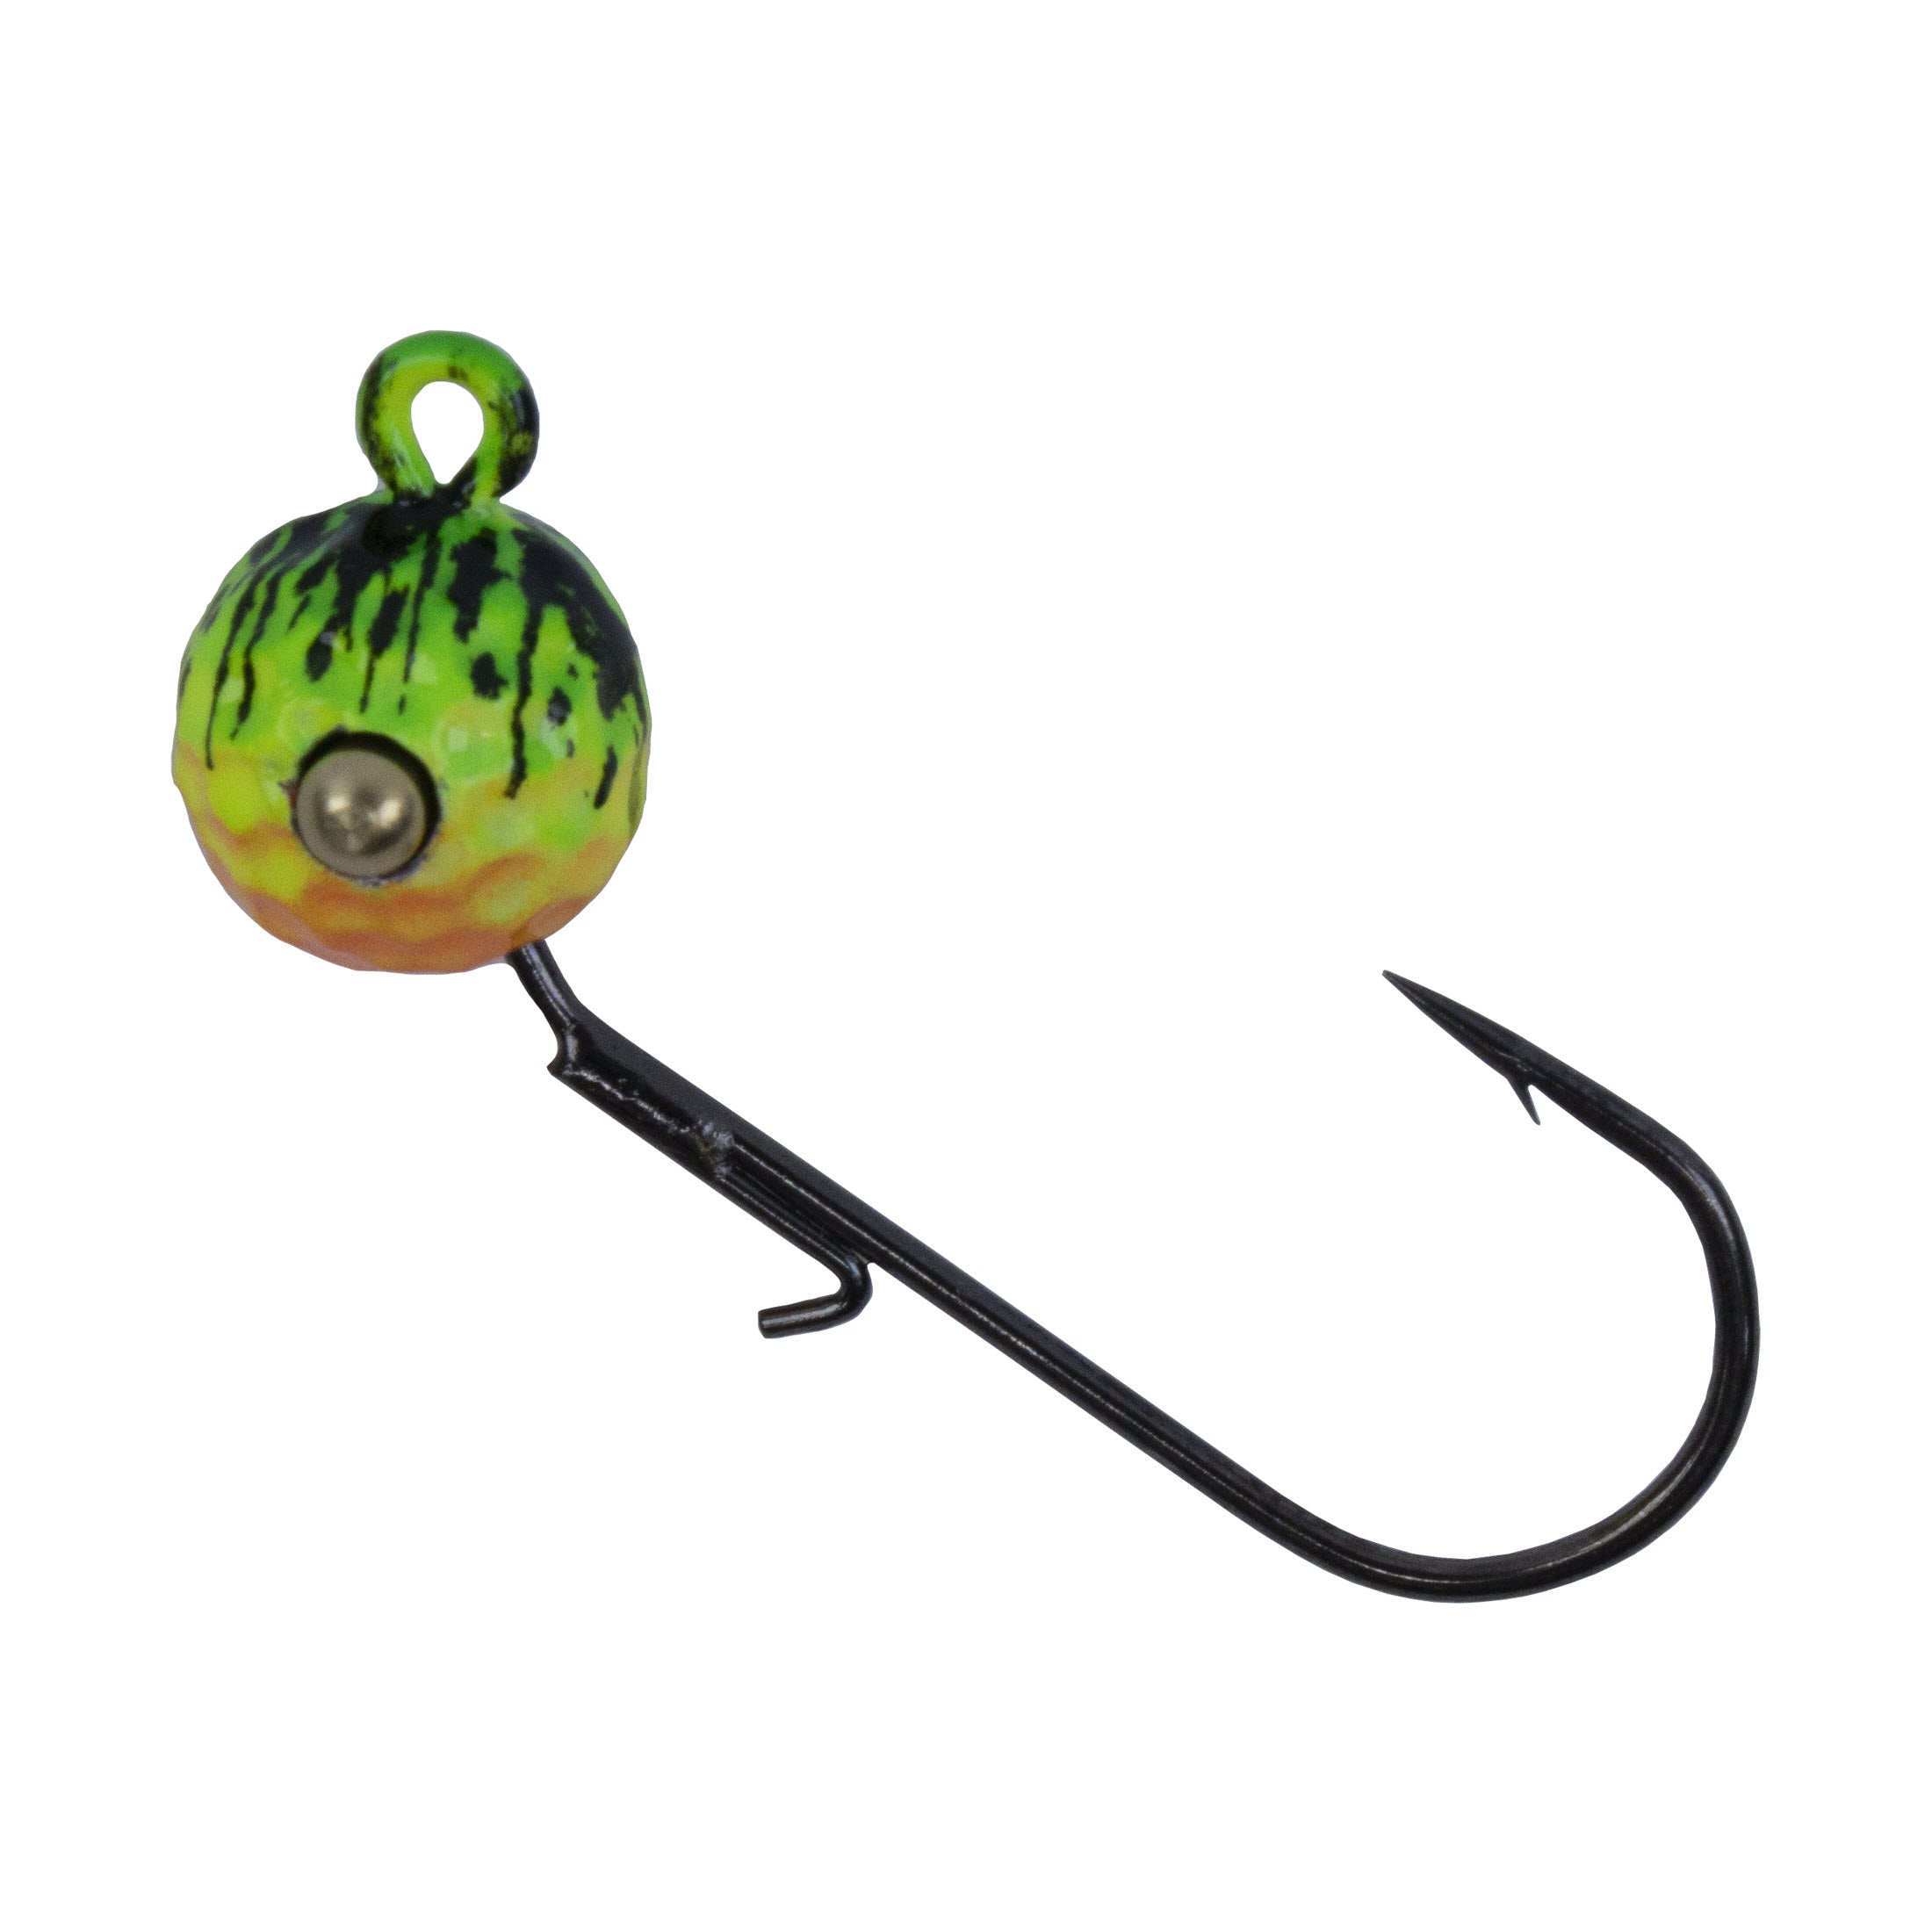  Leland Lures 1/16 oz Pop Eye Jig Chart Fishing Equipment :  Fishing Jigs : Sports & Outdoors